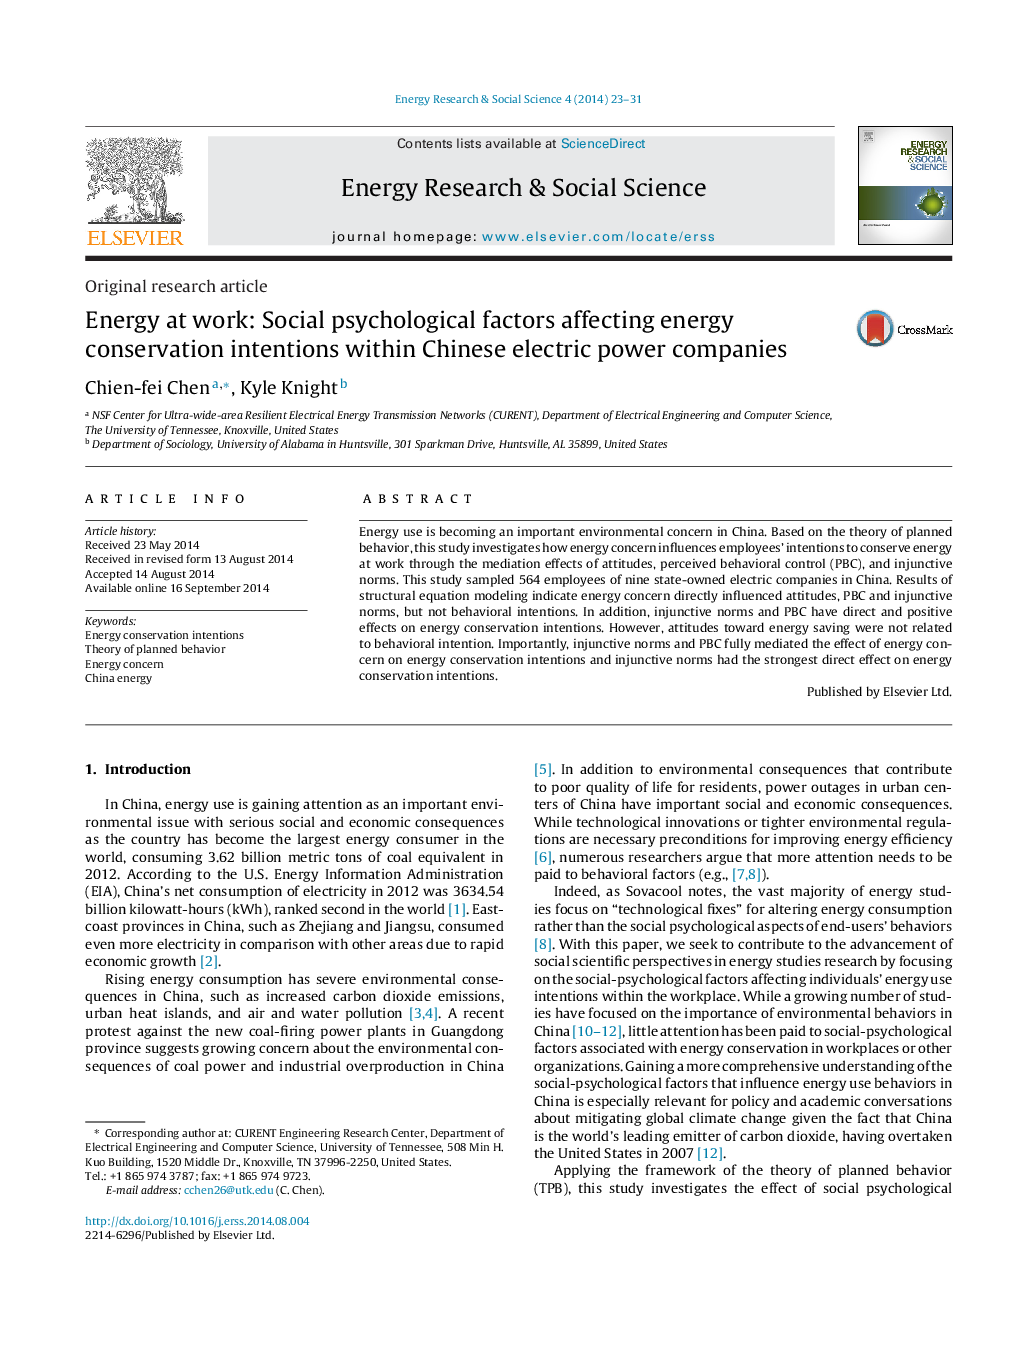 انرژی در محل کار: عوامل روانی اجتماعی مؤثر بر نیات حفاظت از انرژی در شرکت برق چینی